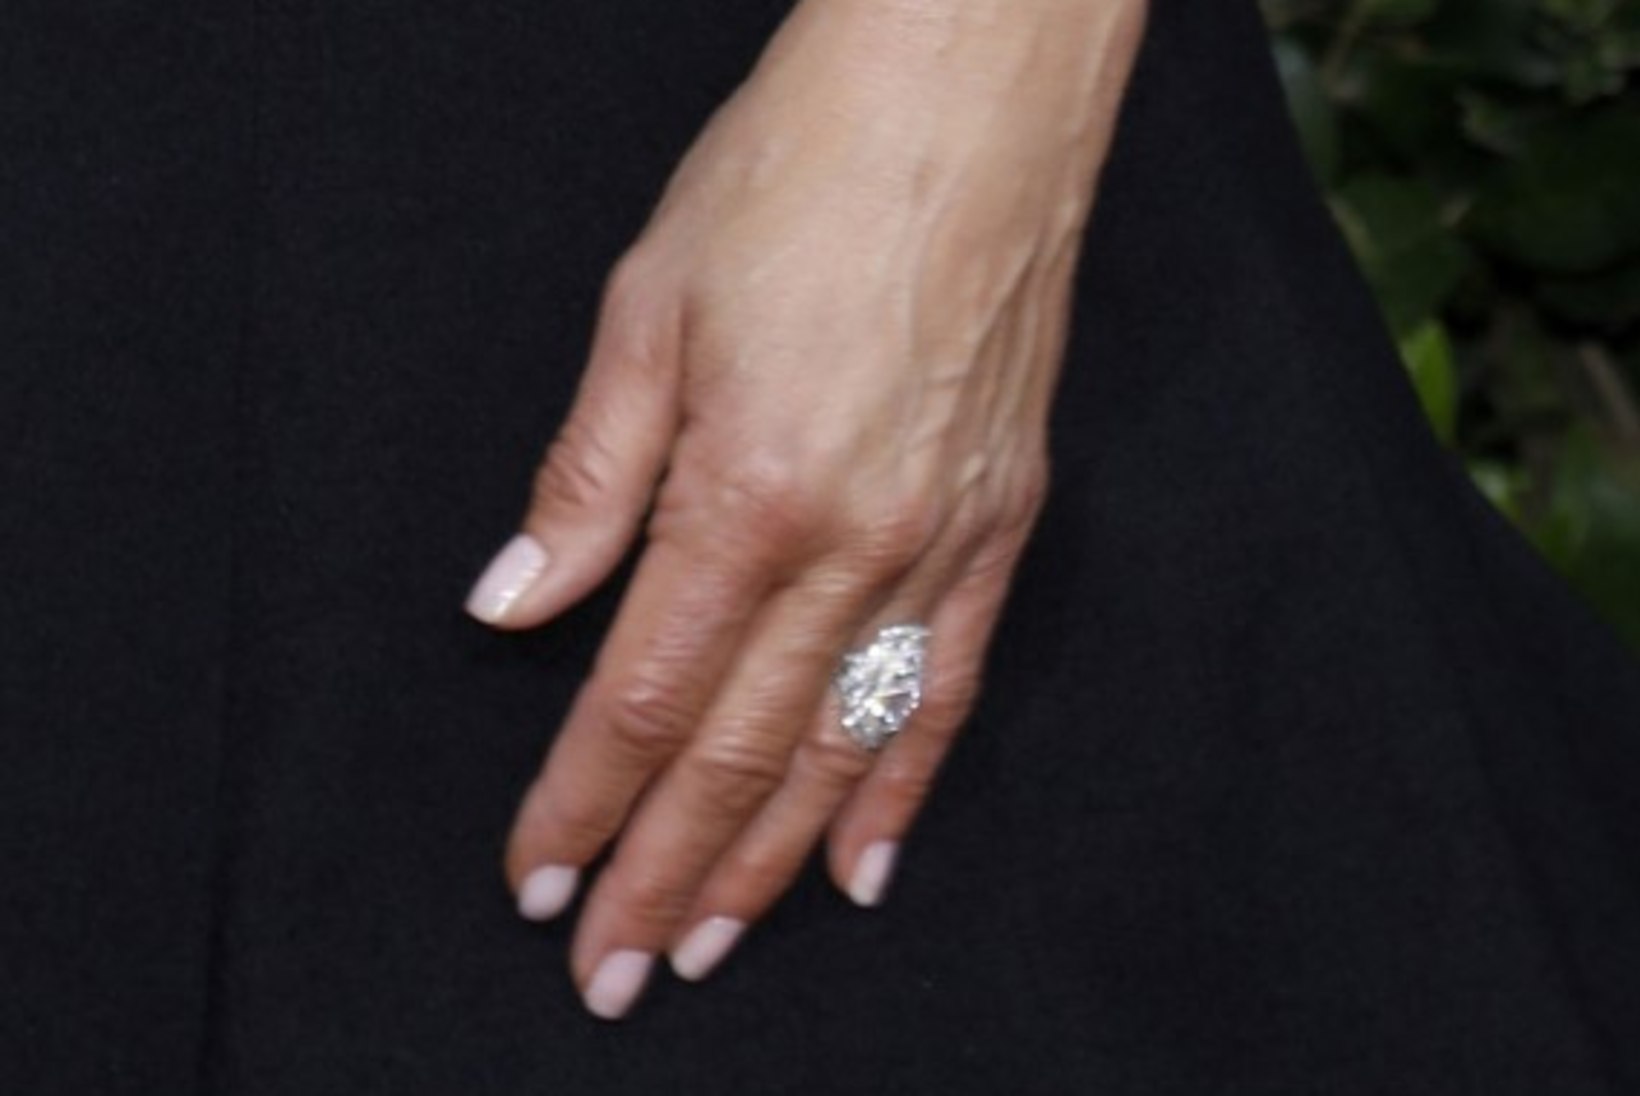 Jennifer Aniston on uuelt kallimalt kihlasõrmuse sõrme saanud?